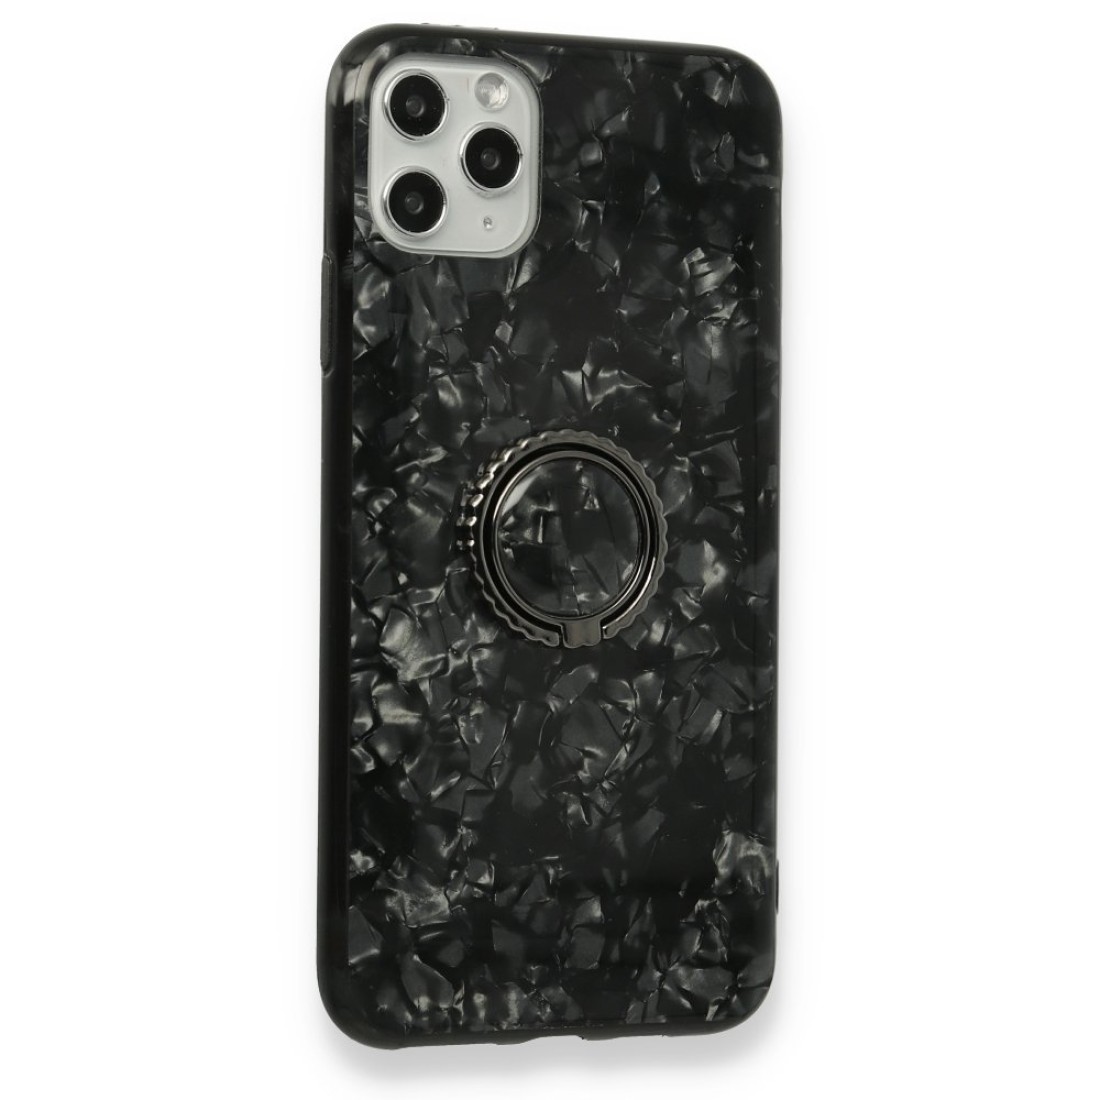 Apple iPhone 11 Pro Kılıf Marble Yüzüklü Silikon - Siyah